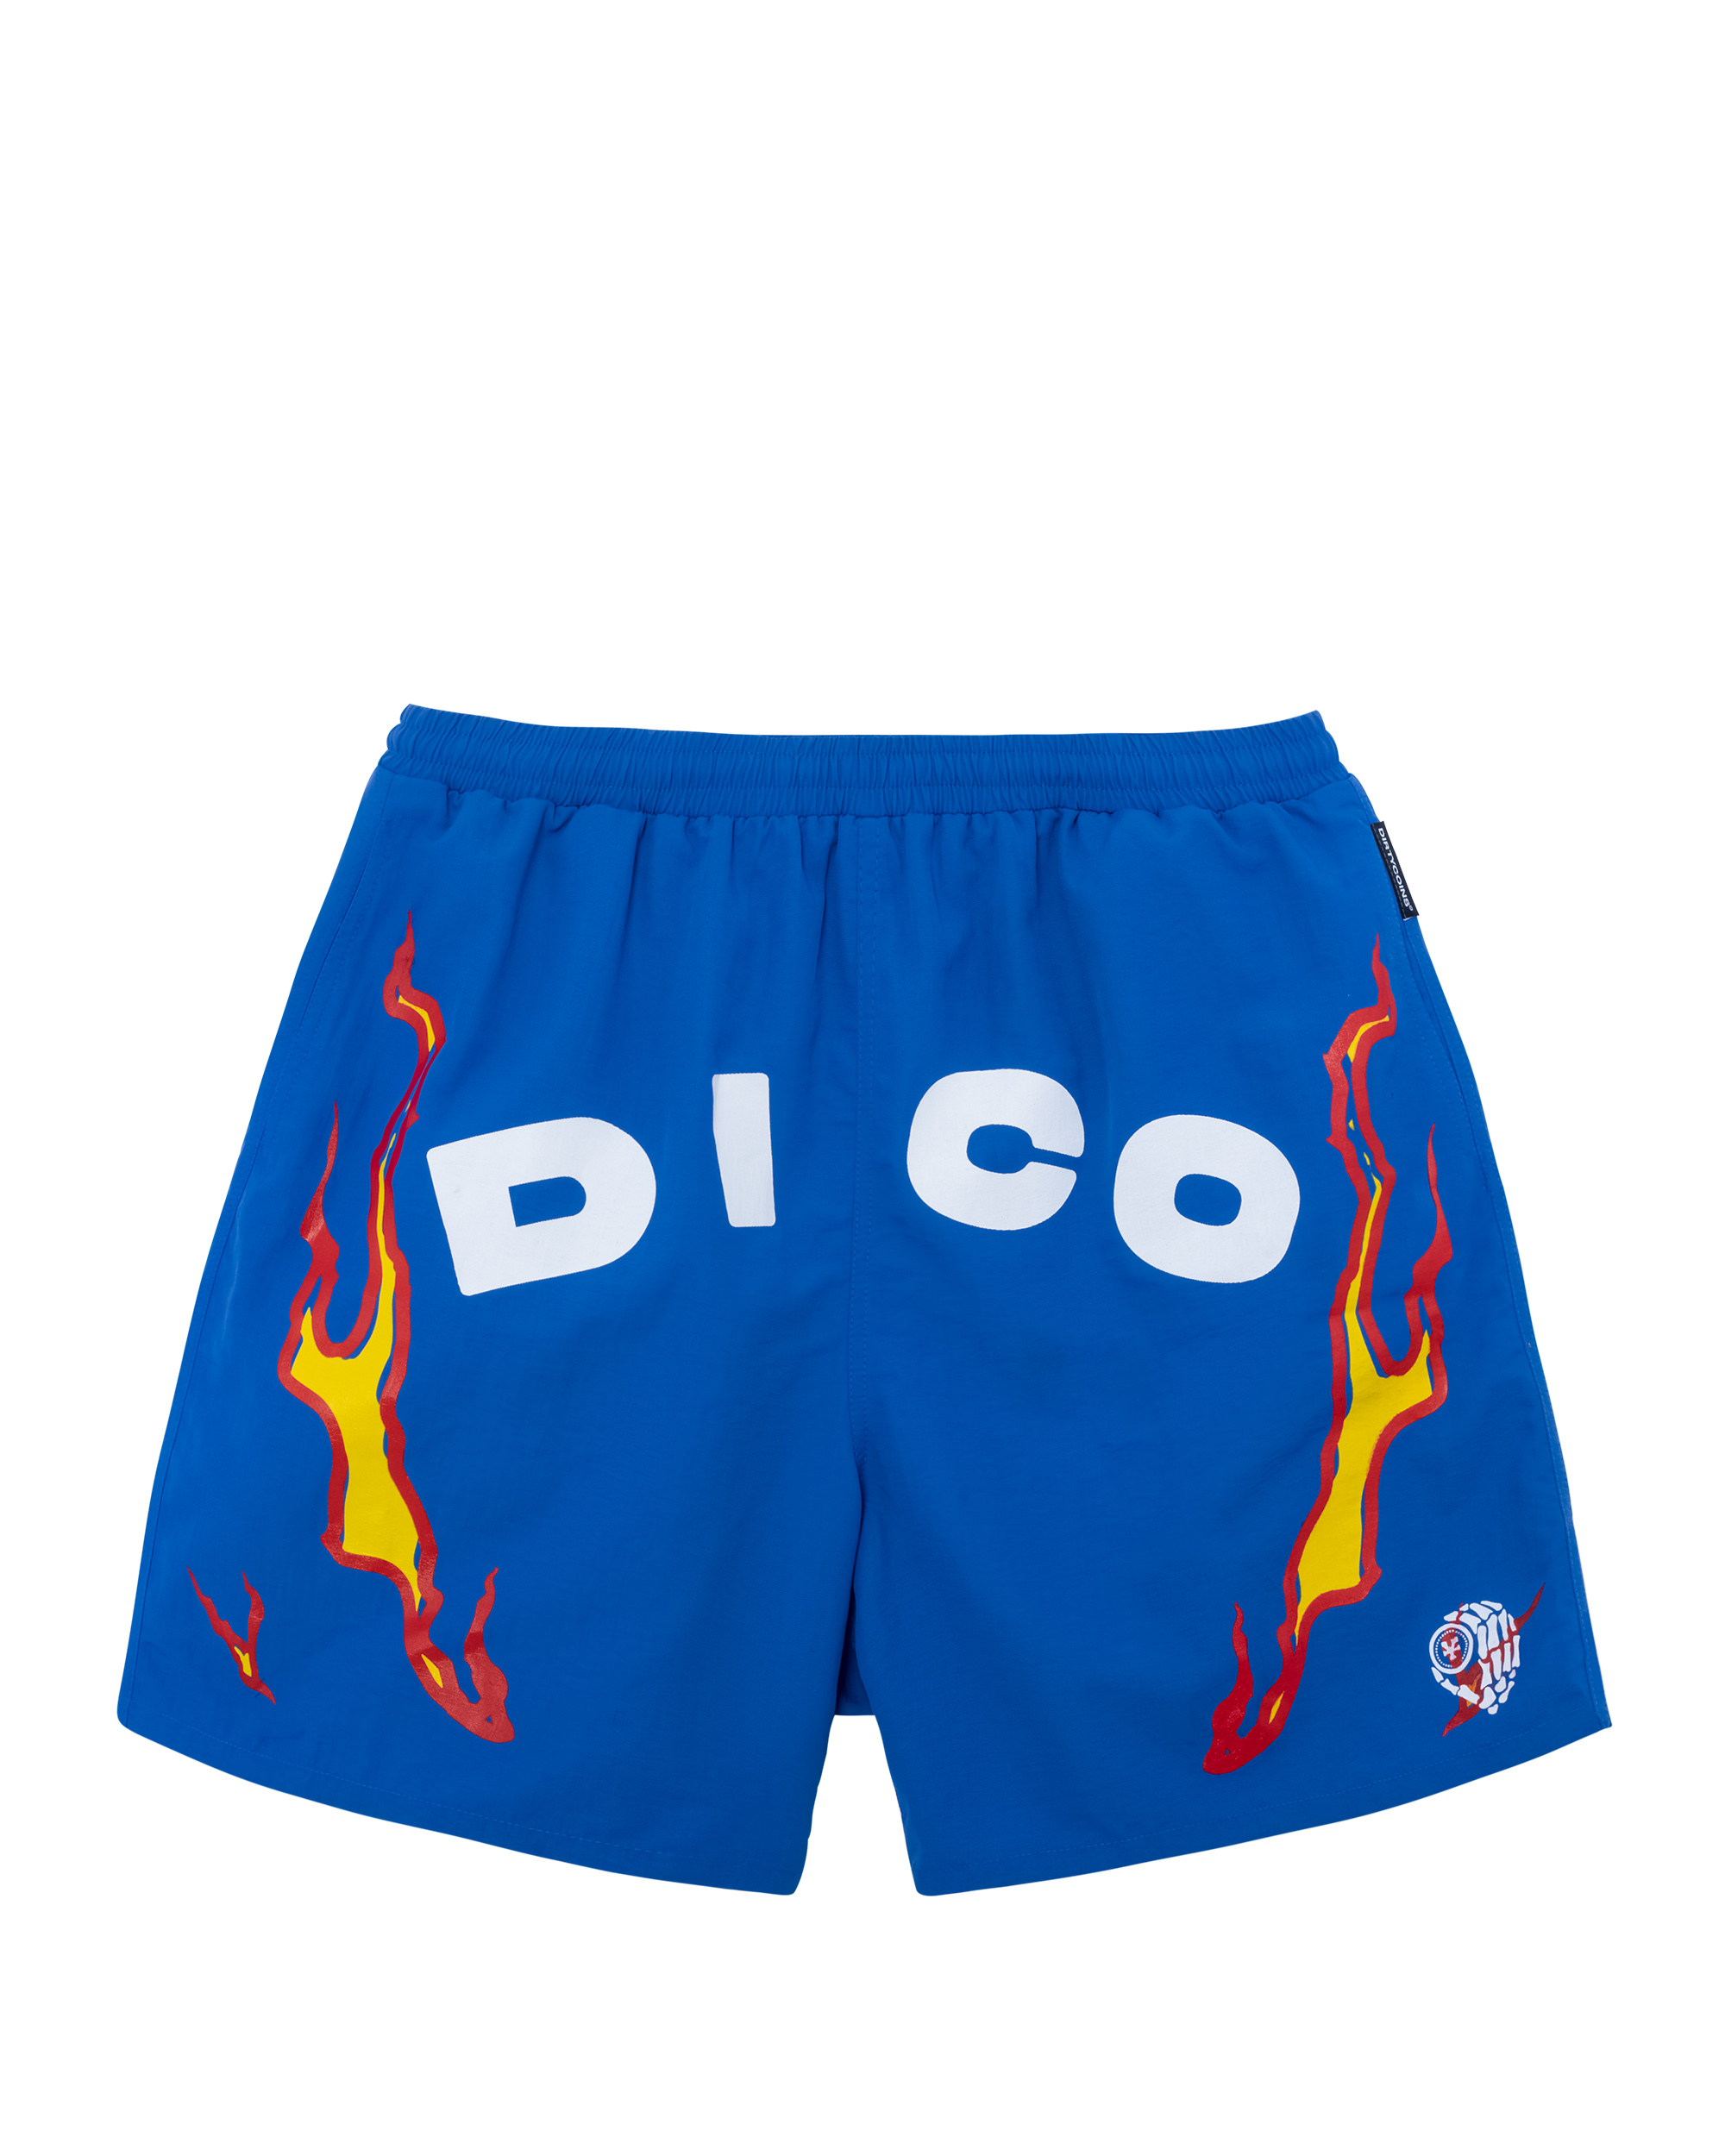 DirtyCoins x LilWuyn Flame Shorts - Blue